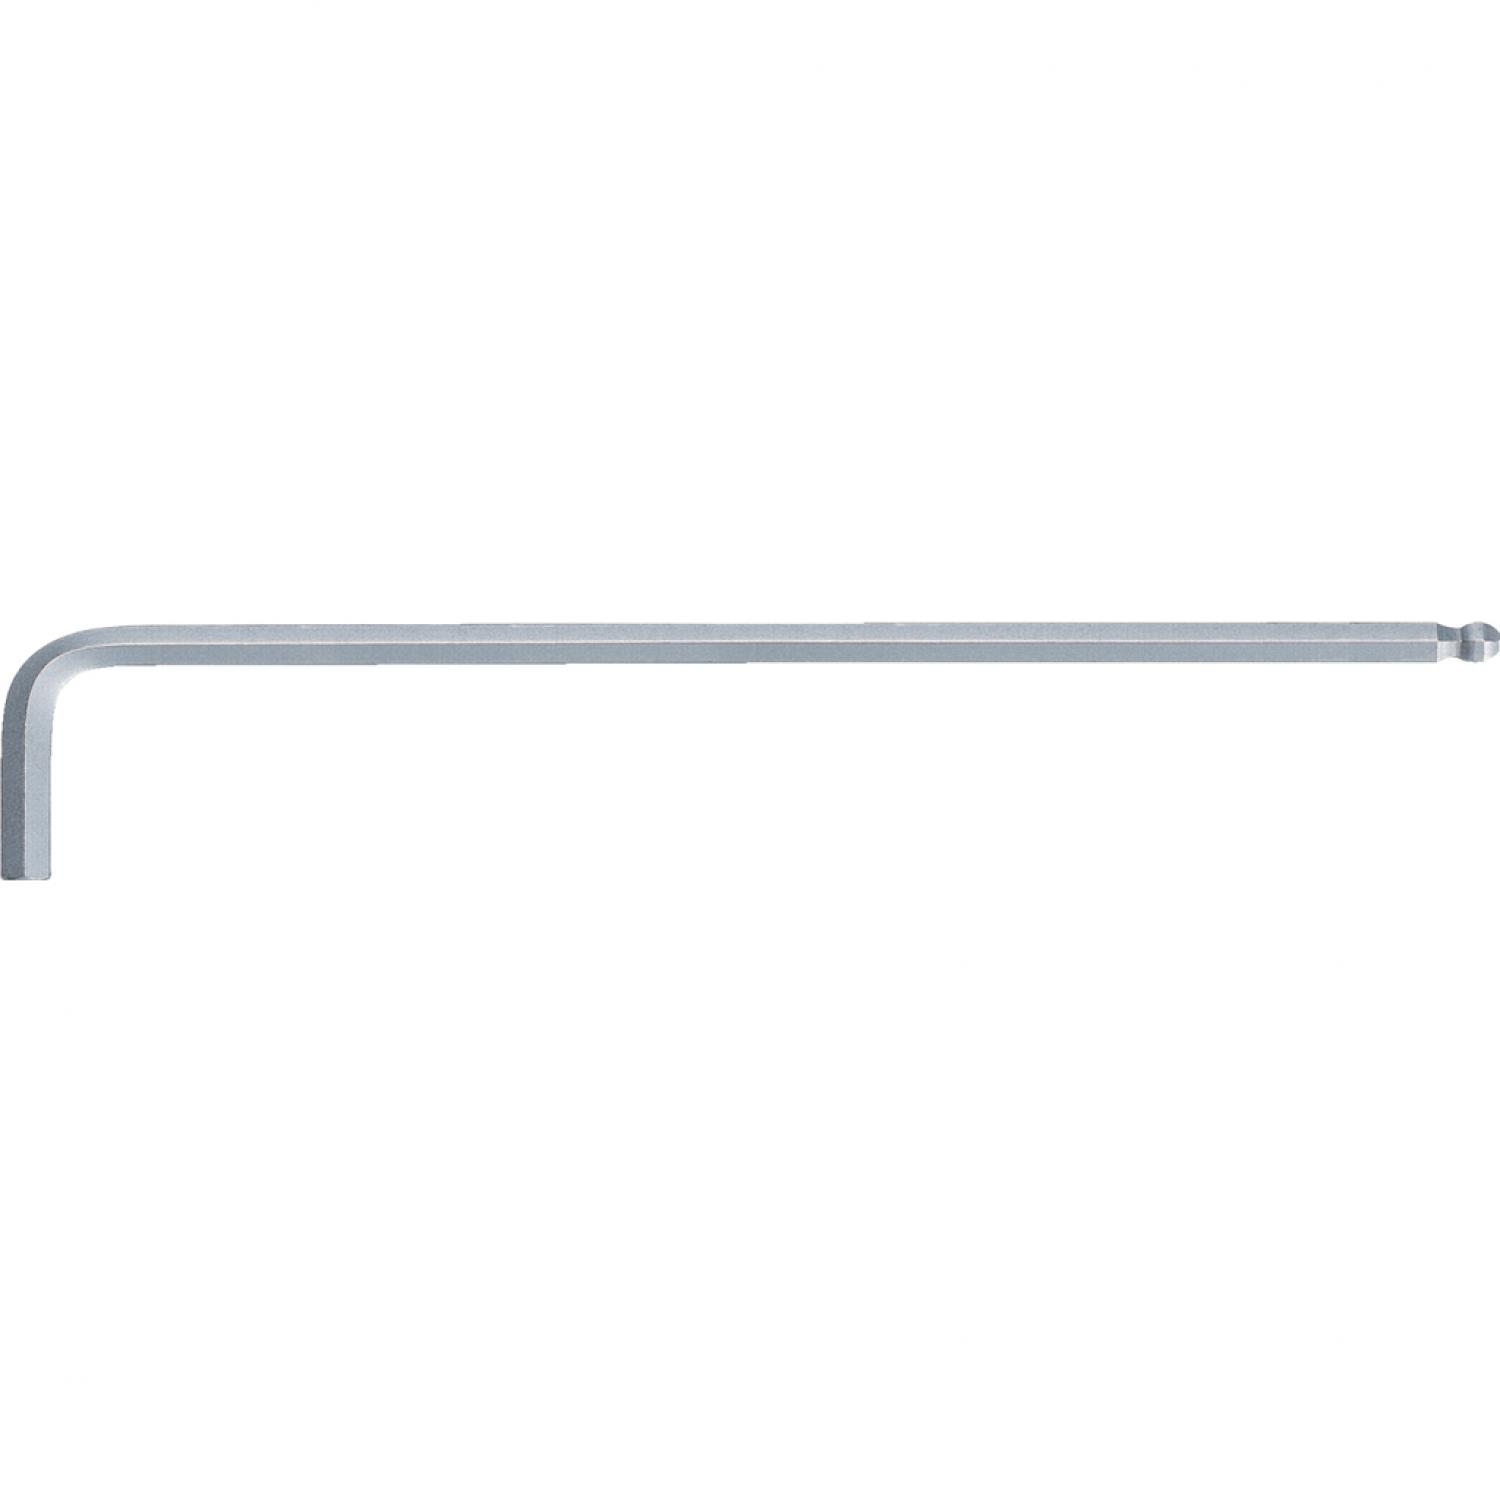 Угловой штифтовой ключ с внутренним шестигранником и шаровой головкой, размера XL, 4 мм